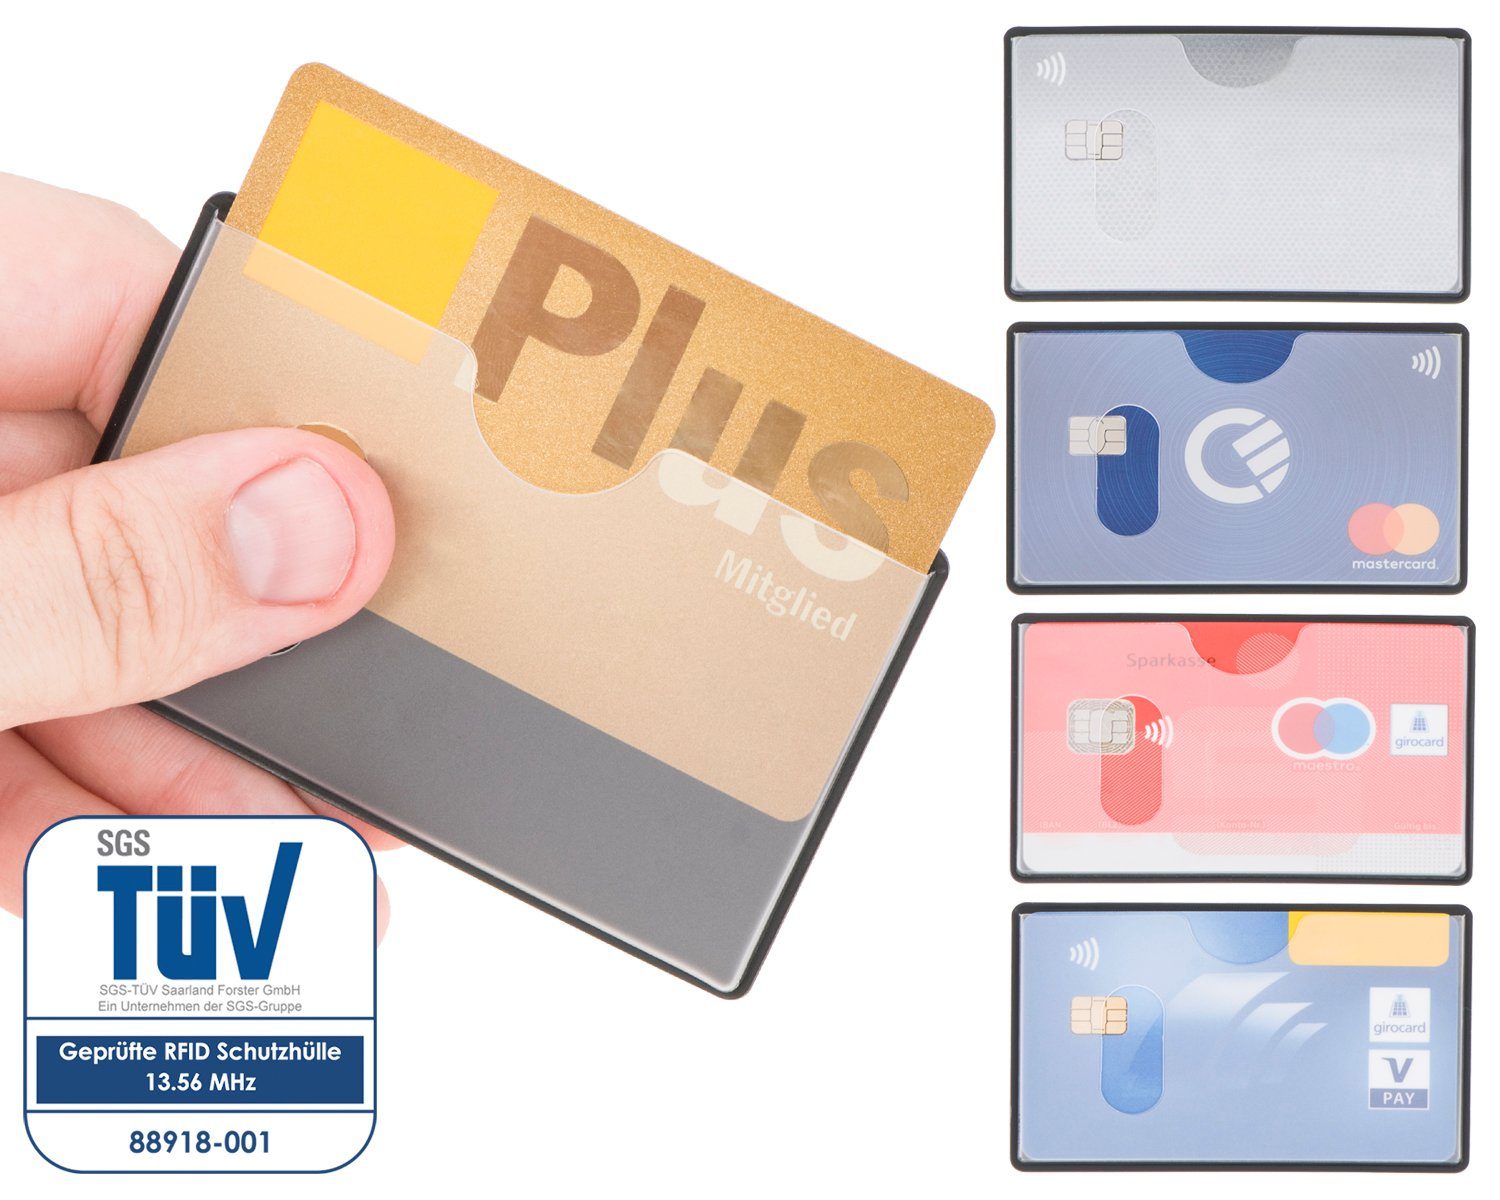 Etui Scheckkarte abgeschirmt, 91 mm, Schutz, Stück RFID - RFID-Block 59 NFZ valonic Einschub transparent, 6 Kreditkarte, valonic x Kreditkartenhüllen oben